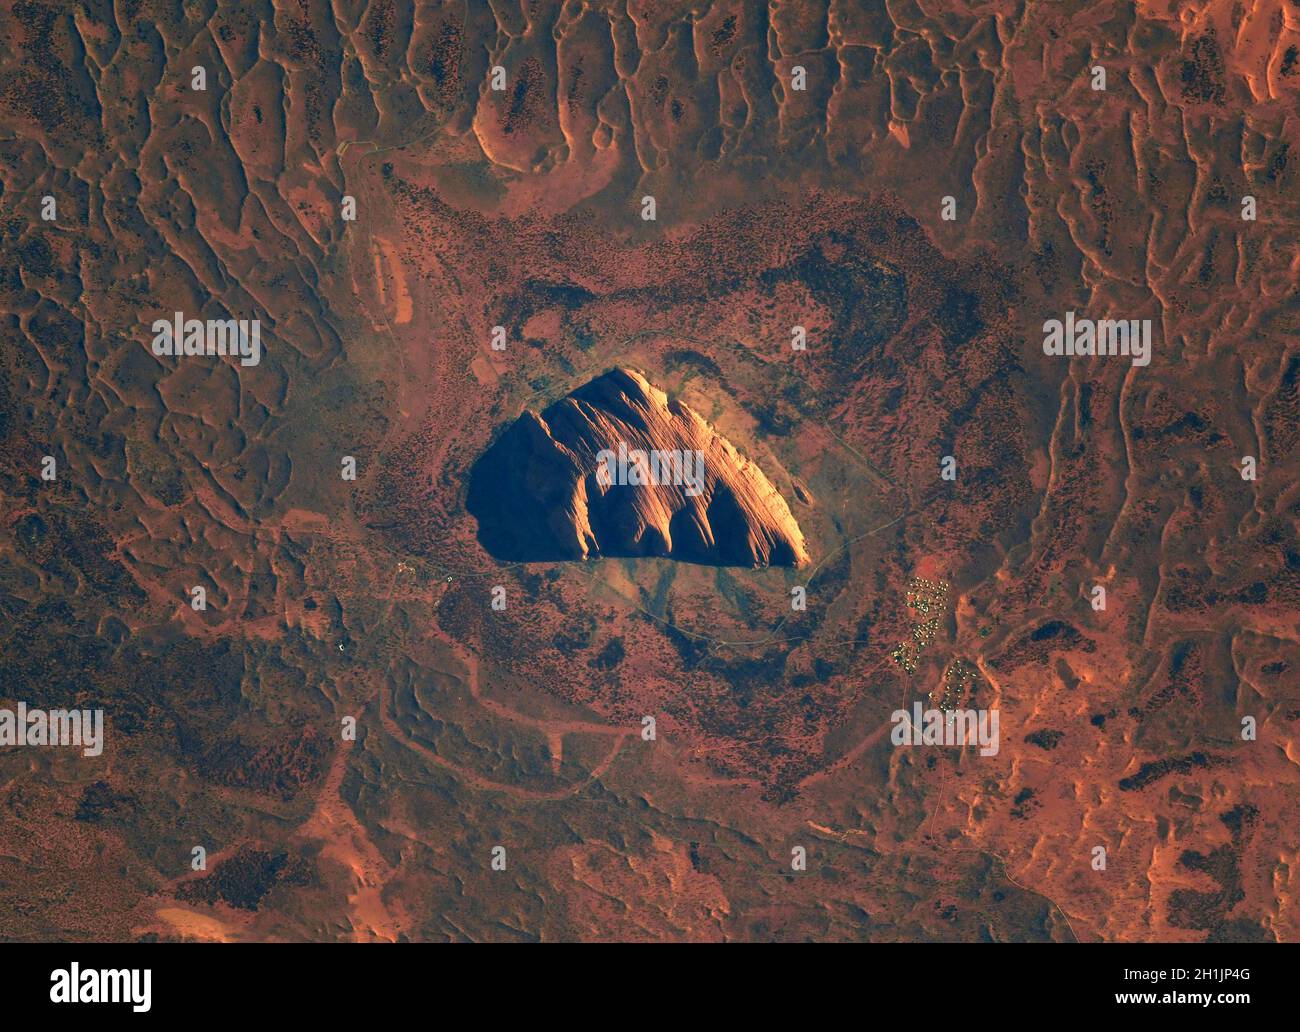 Una vista della Terra dalla Stazione spaziale Internazionale: Uluru, precedentemente noto come Ayers Rock, Australia al mattino. Un luogo sacro venerato. Una versione ottimizzata e potenziata digitalmente di un'immagine NASA/ESA. Credito obbligatorio: NASA/ESA/T. Pesquet. NB: Limitazioni d'uso: Da non presentare come approvazione. Foto Stock